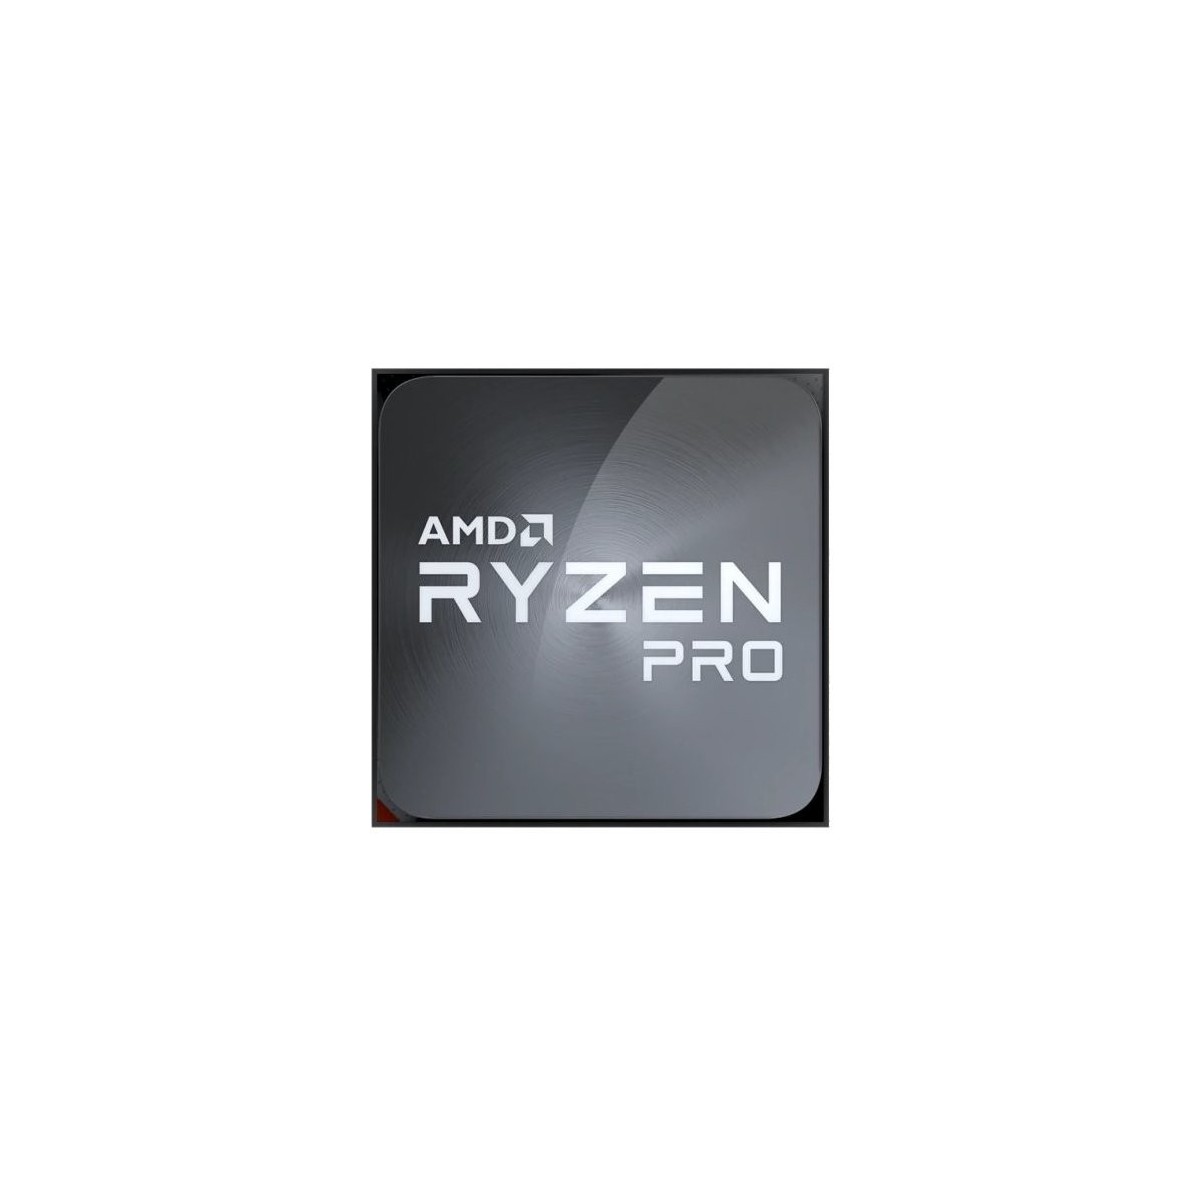 AMD Ryzen 5 PRO 4650G - AMD Ryzen 5 PRO - 3.7 GHz - Socket AM4 - PC - 7 nm - AMD